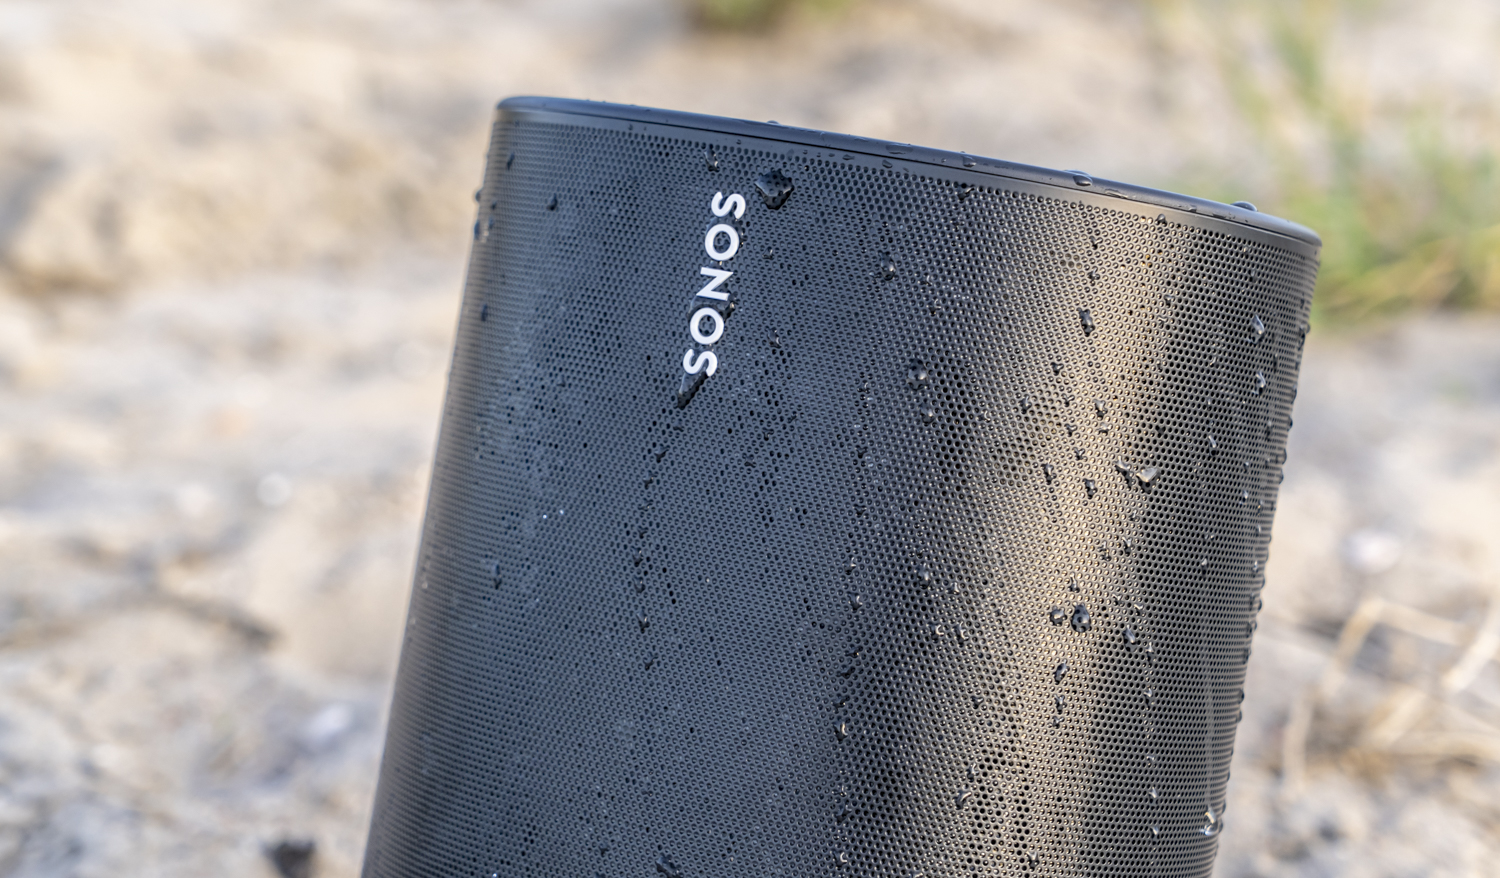 أخبار 24 يناير ، 2020 باتريك سبنس الرئيس التنفيذي لشركة Sonos بشأن القرار الكبير وخيبات الأمل